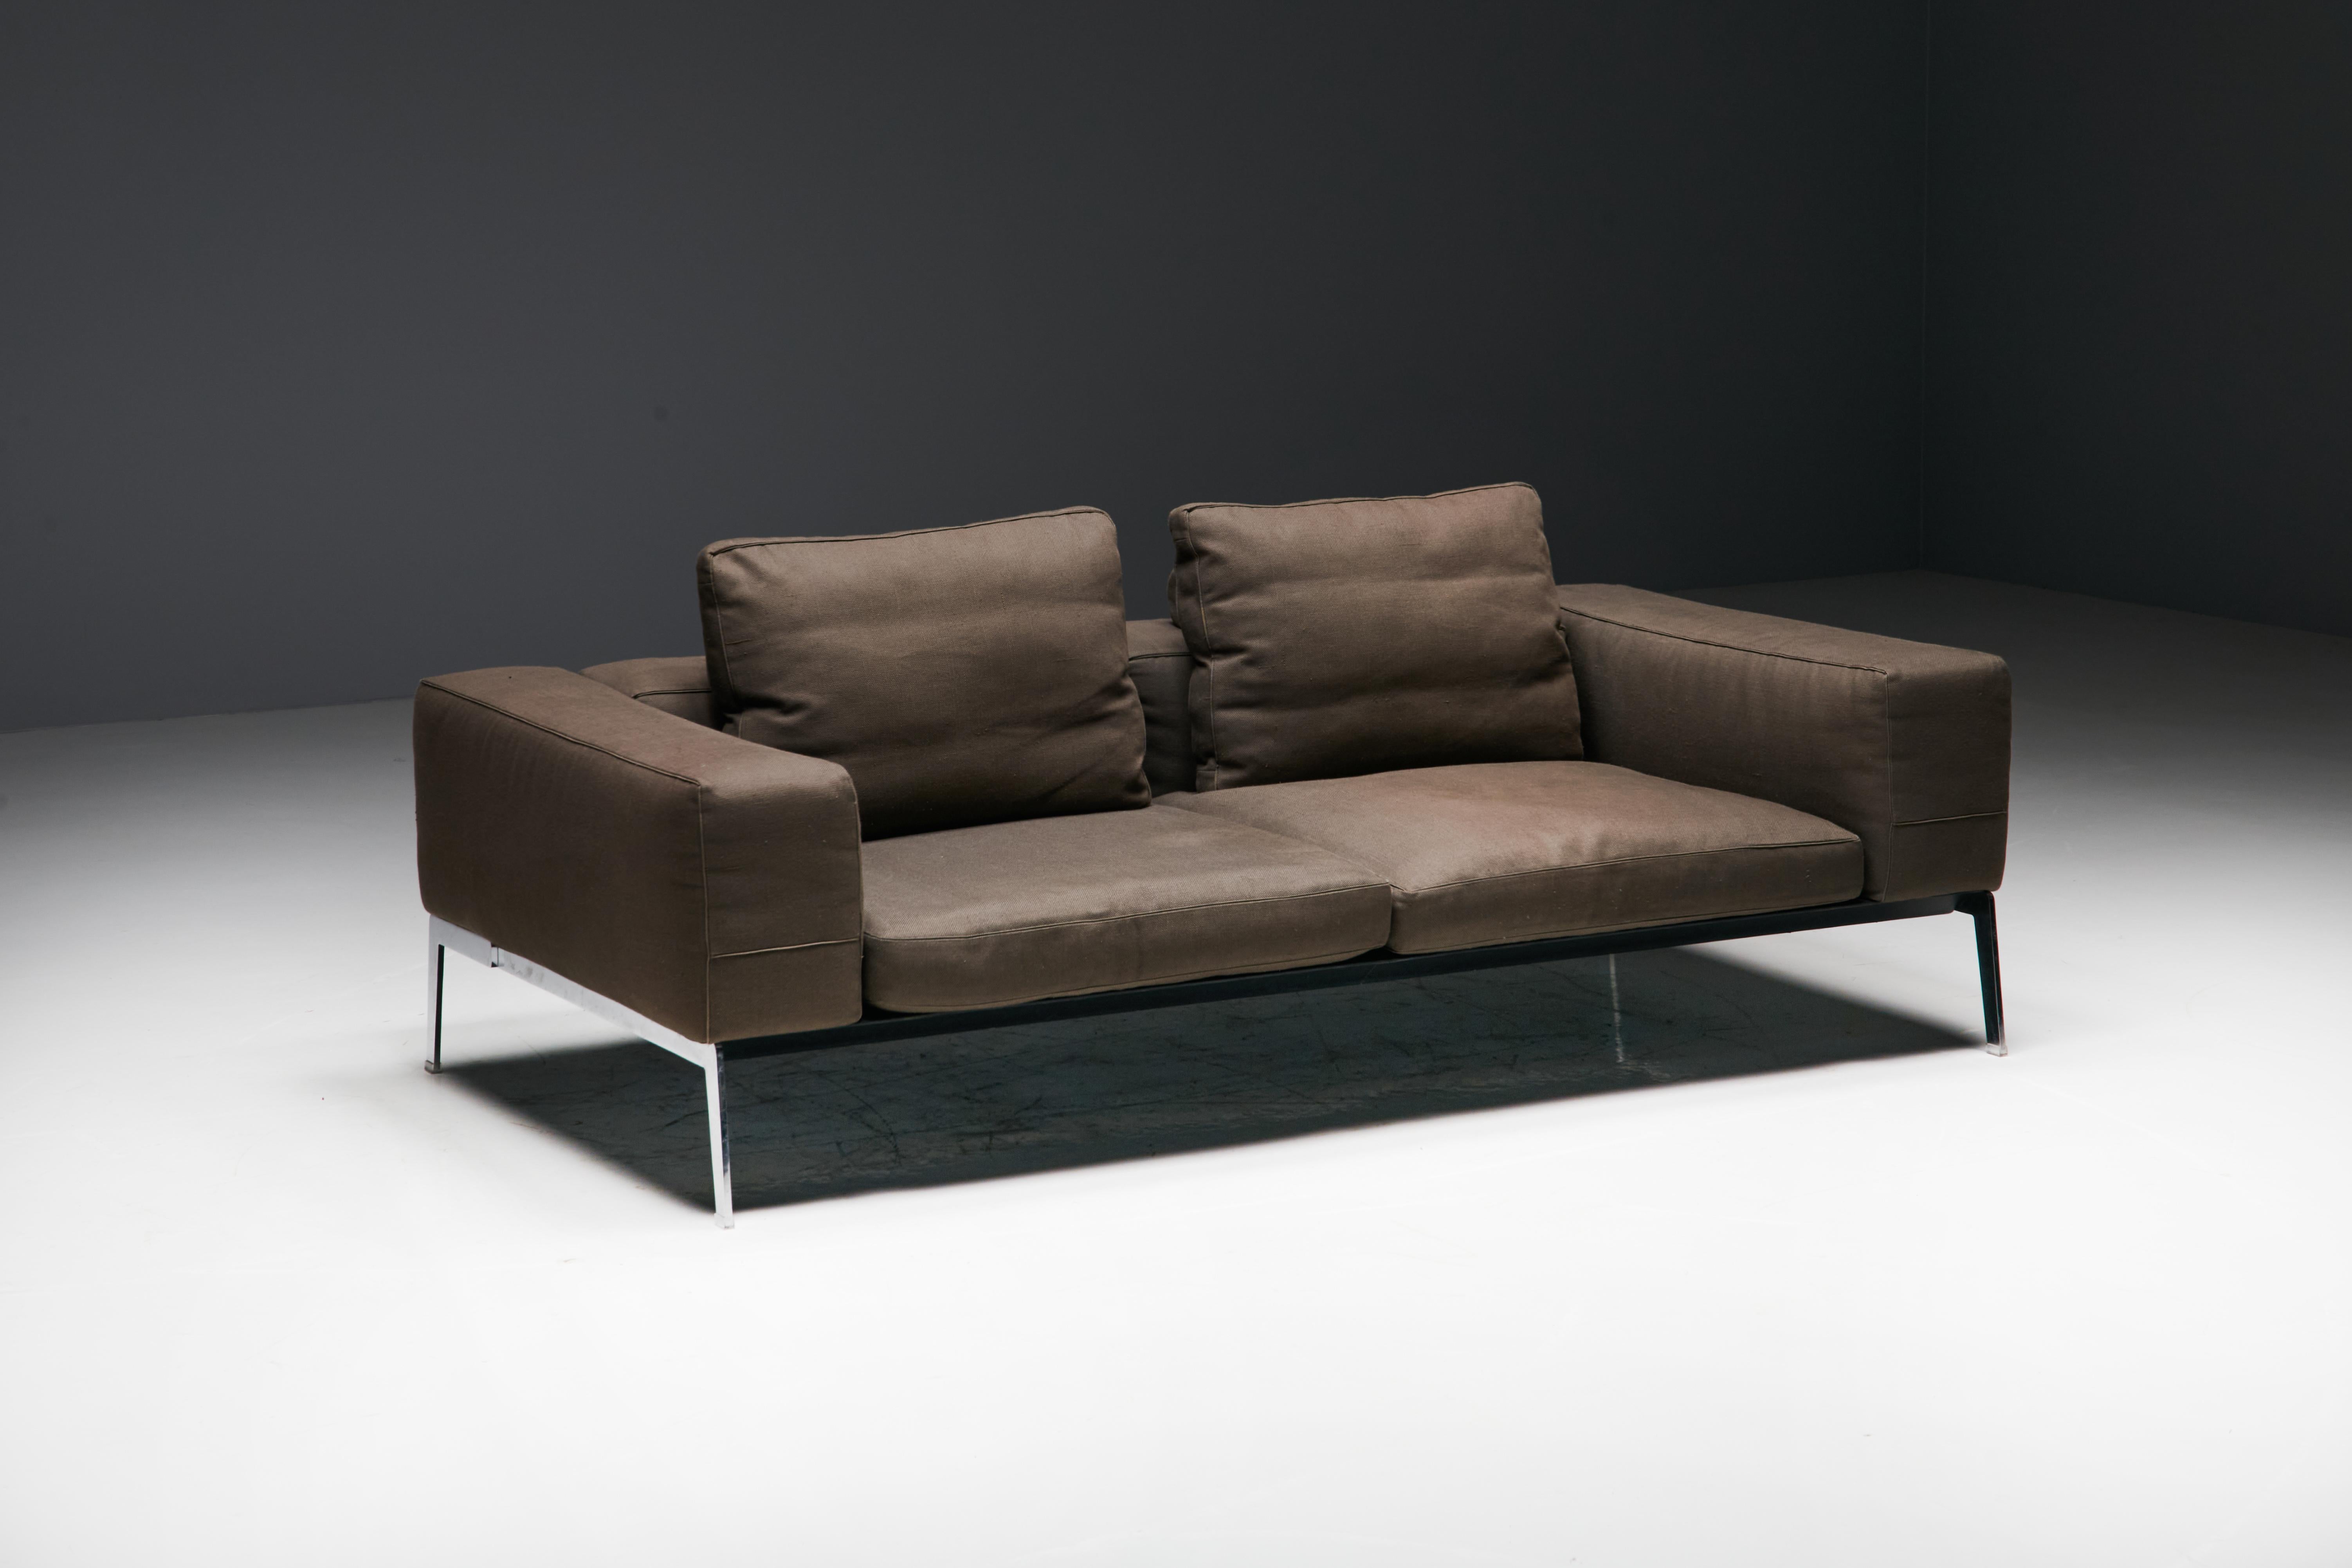 Das Zweisitzer-Sofa Lifesteel von Antonio Citterio für Flexform ist die Verkörperung von zeitgenössischem Luxus und zeitlosem Design. Das Sofa Lifesteel zeichnet sich durch ein markantes Metallgestell und ein fein gepolstertes Gestell aus, das mit